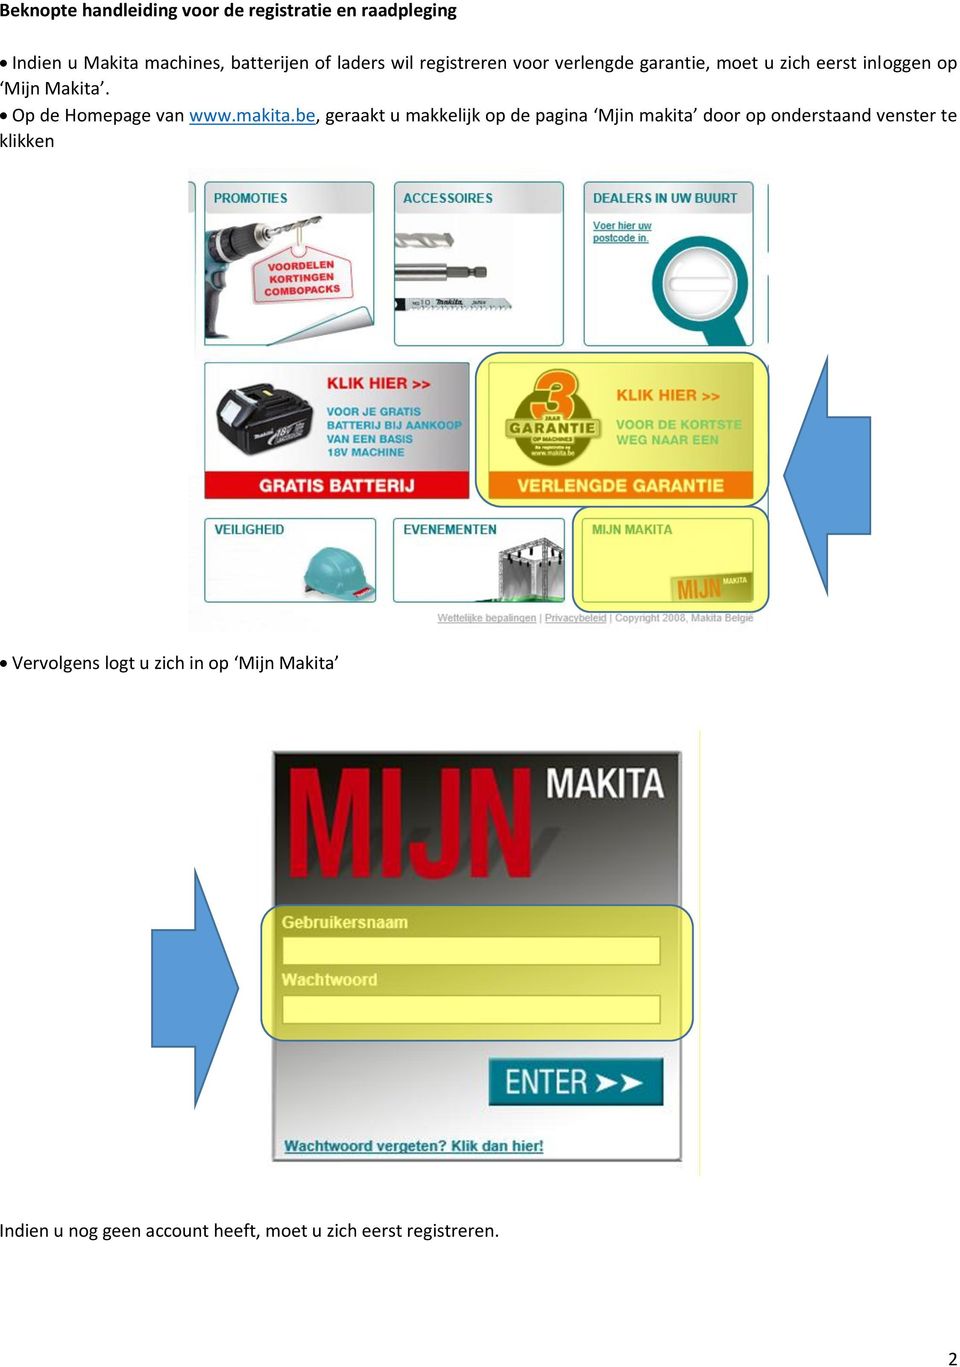 Op de Homepage van www.makita.